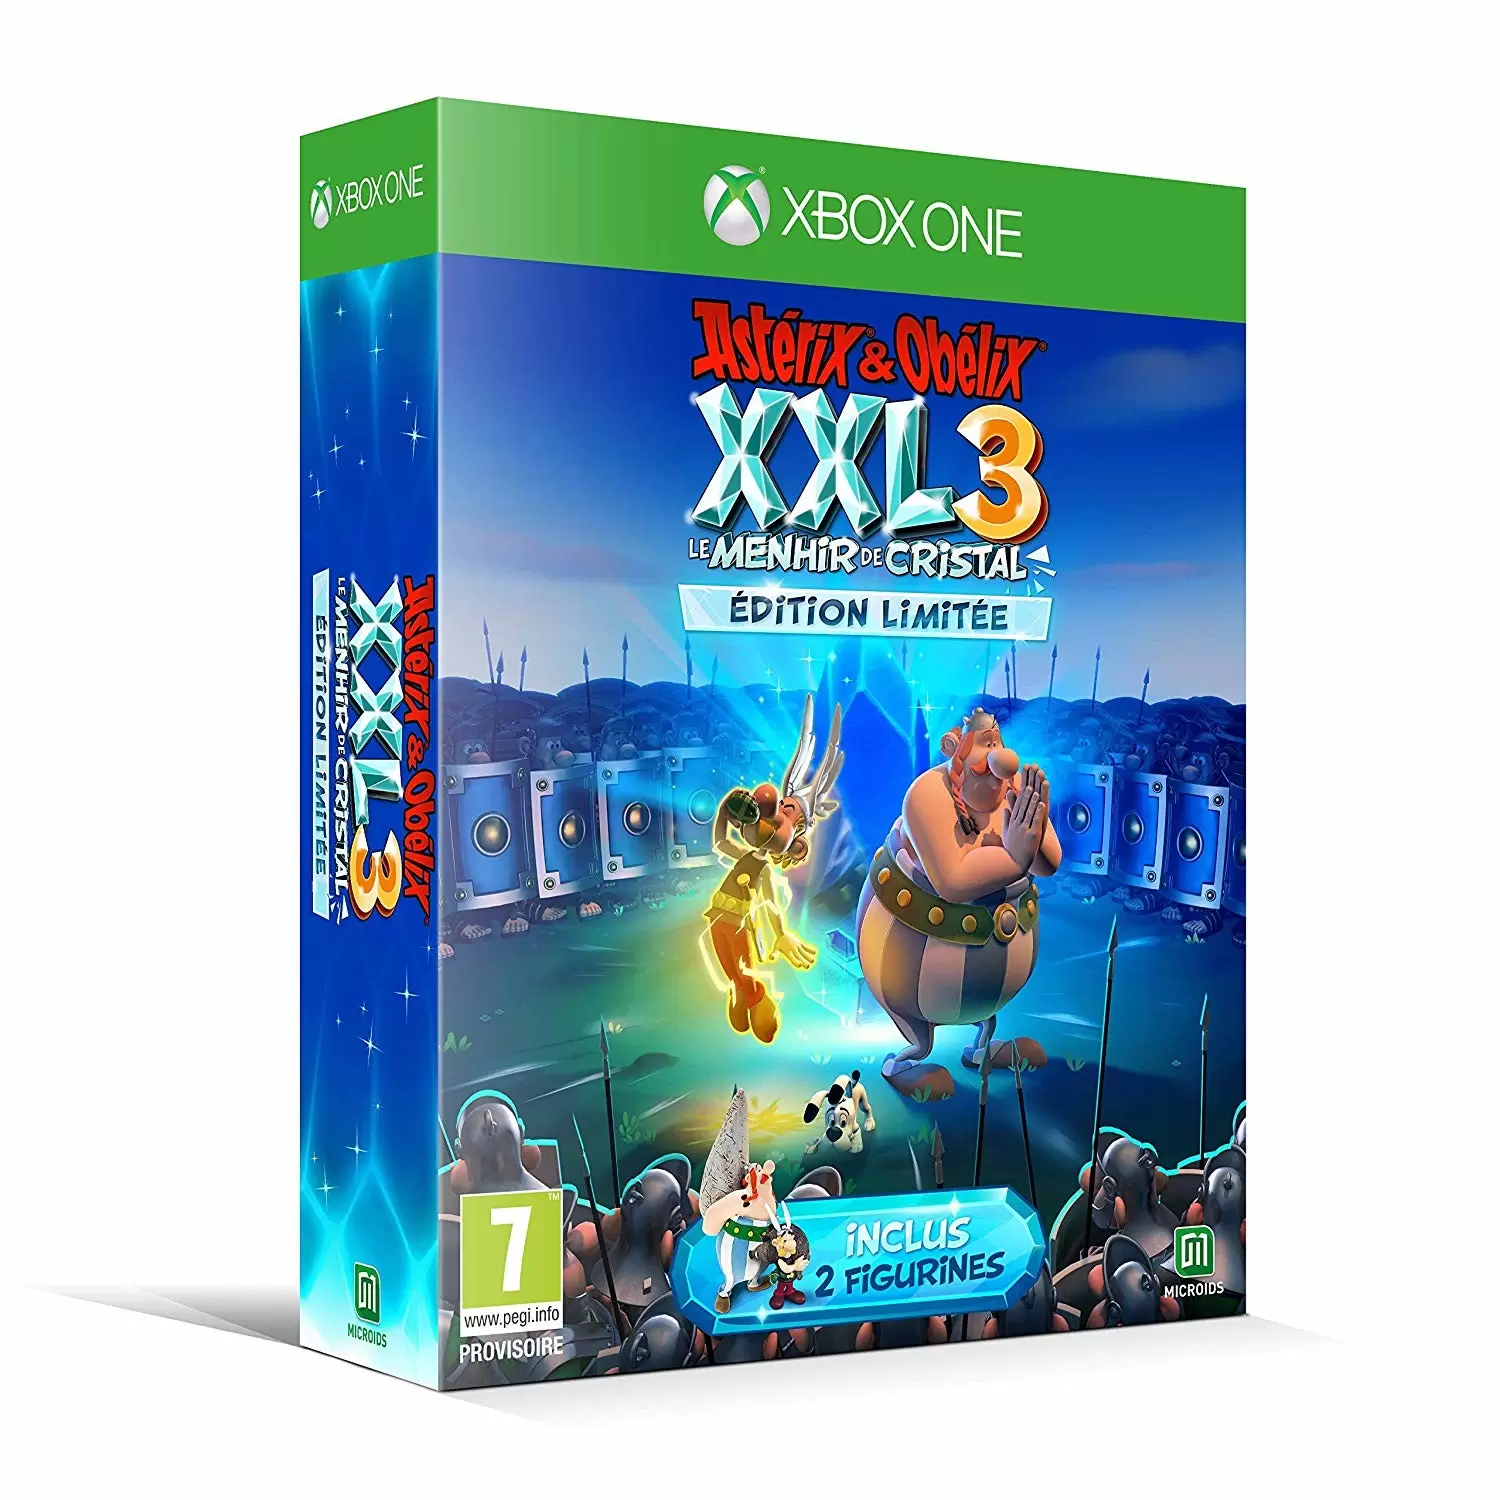 XBOX One Games - Astérix & Obélix XXL 3 : le Menhir de Cristal - Edition Limitée